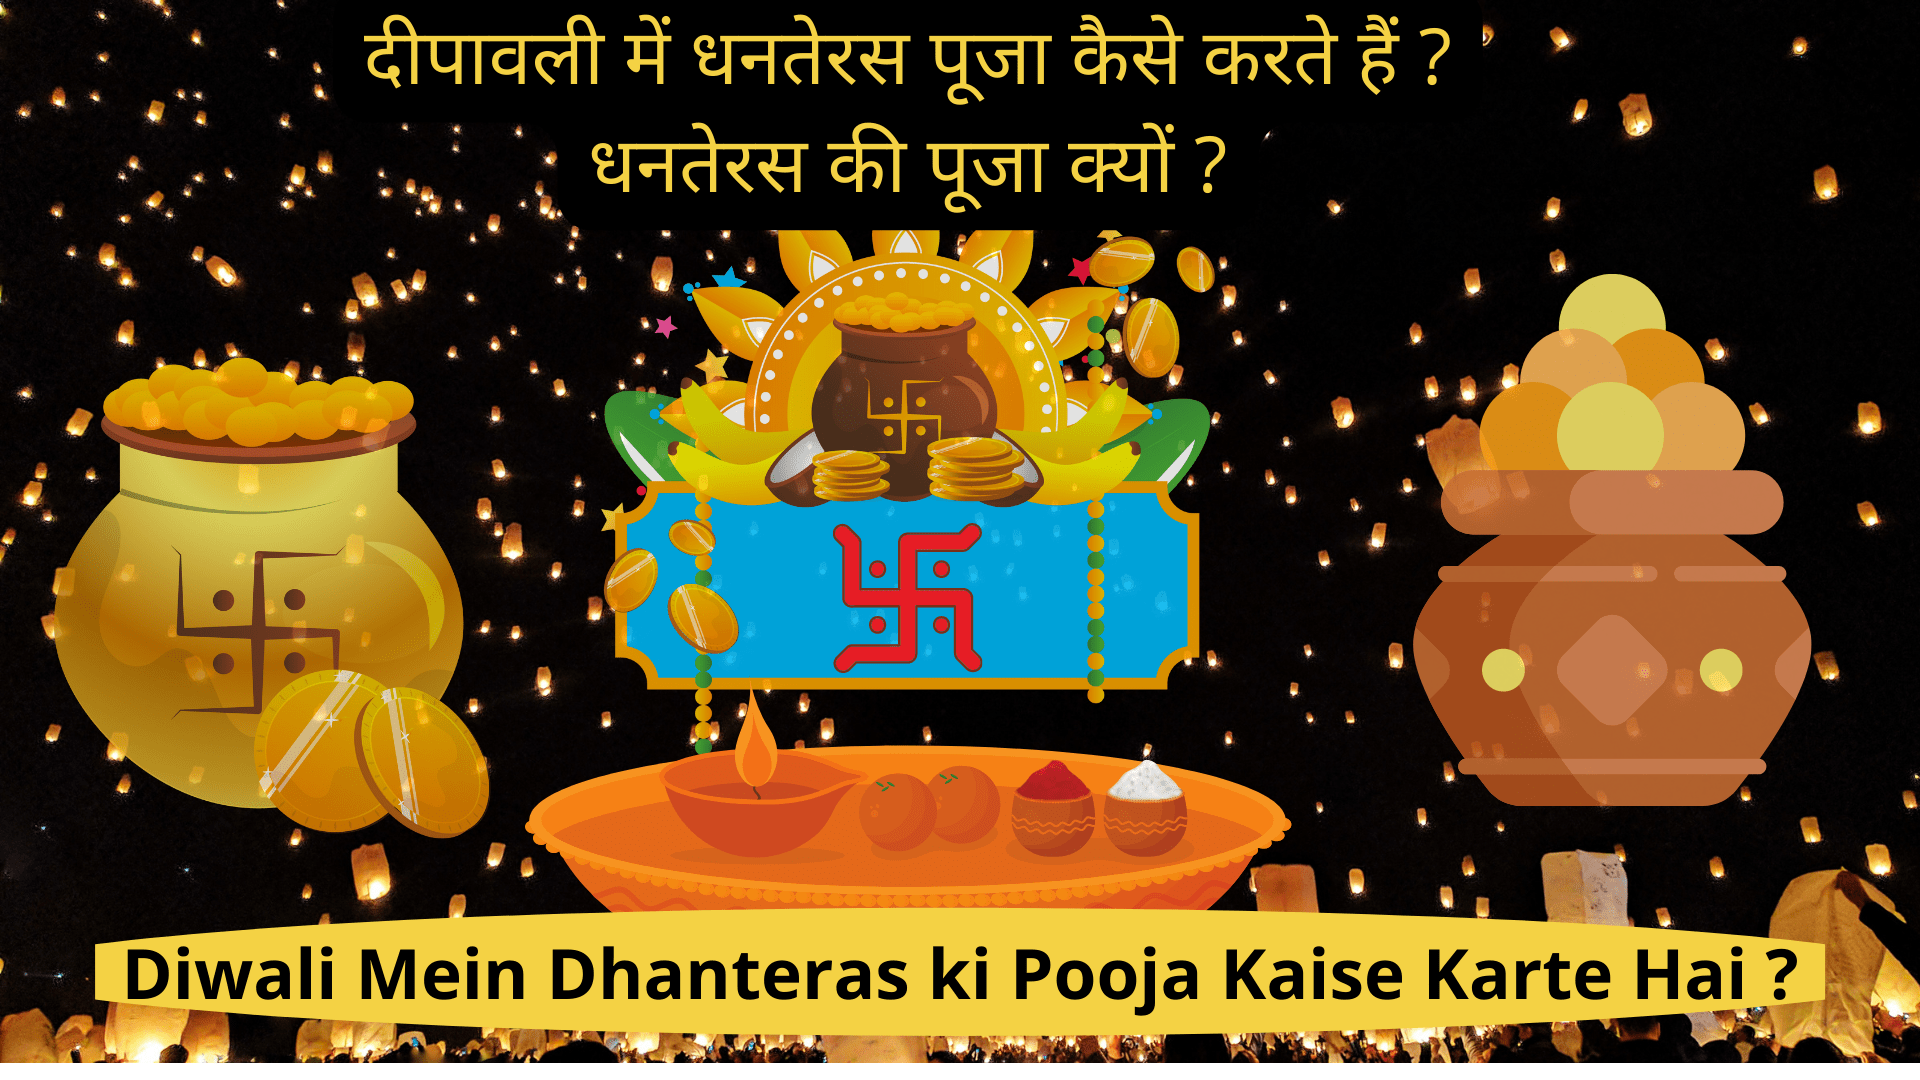 दीपावली में धनतेरस पूजा कैसे करते हैं ? धनतेरस की पूजा क्यों ?